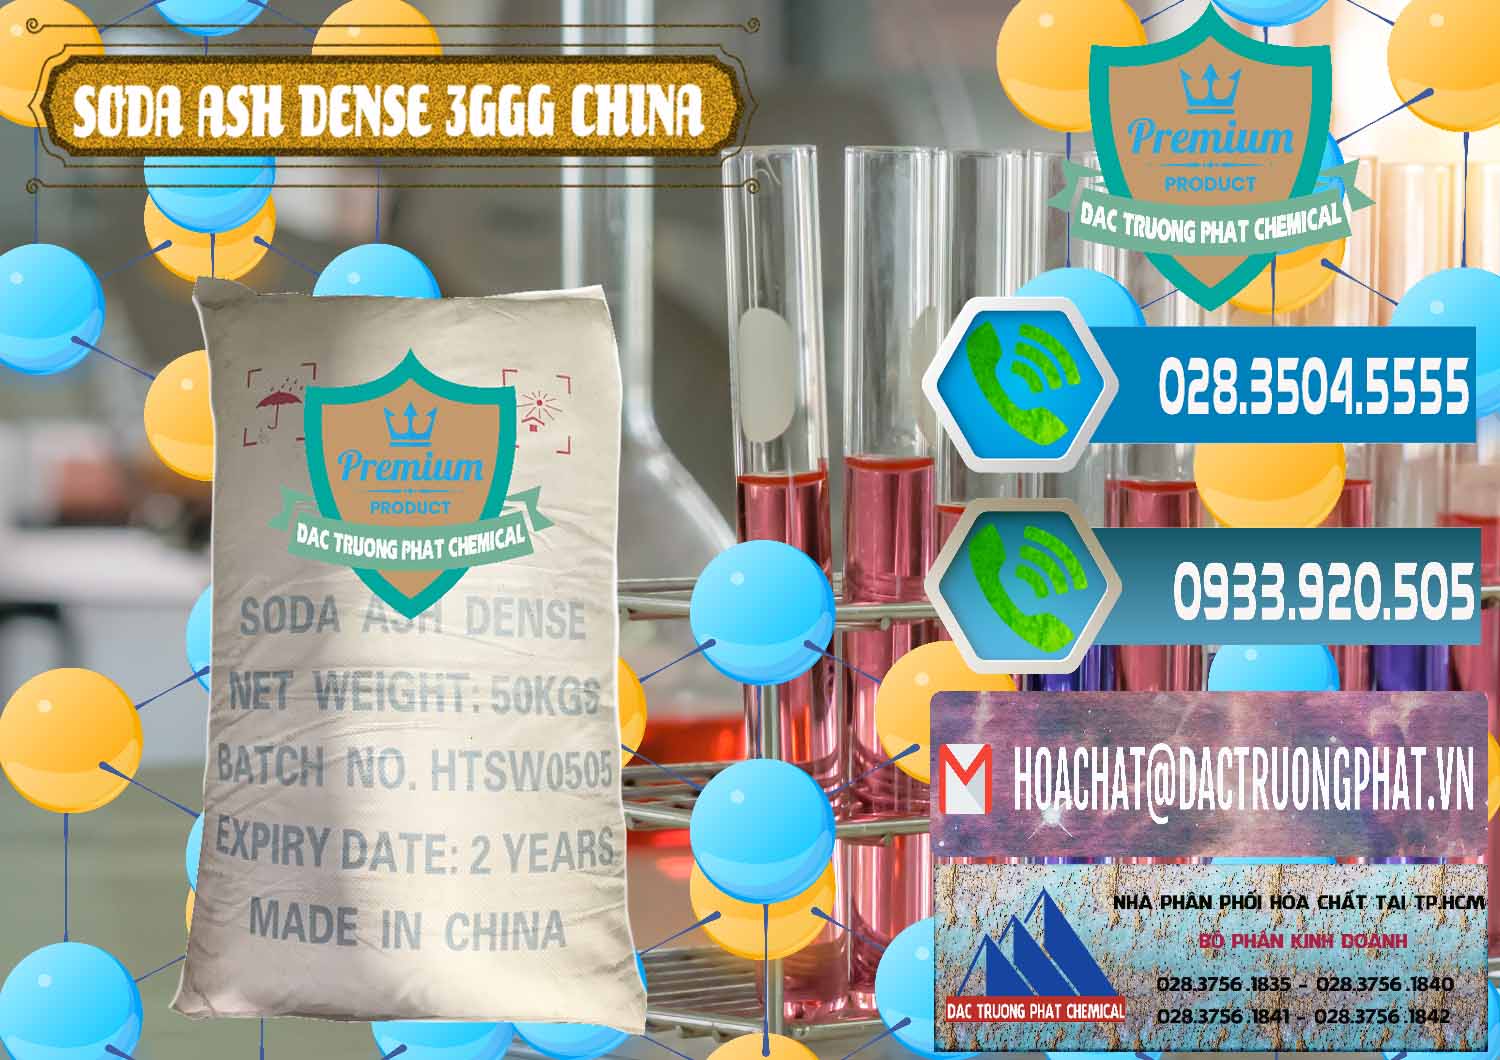 Cty chuyên kinh doanh và bán Soda Ash Dense - NA2CO3 3GGG Trung Quốc China - 0335 - Cty cung ứng ( phân phối ) hóa chất tại TP.HCM - congtyhoachat.net